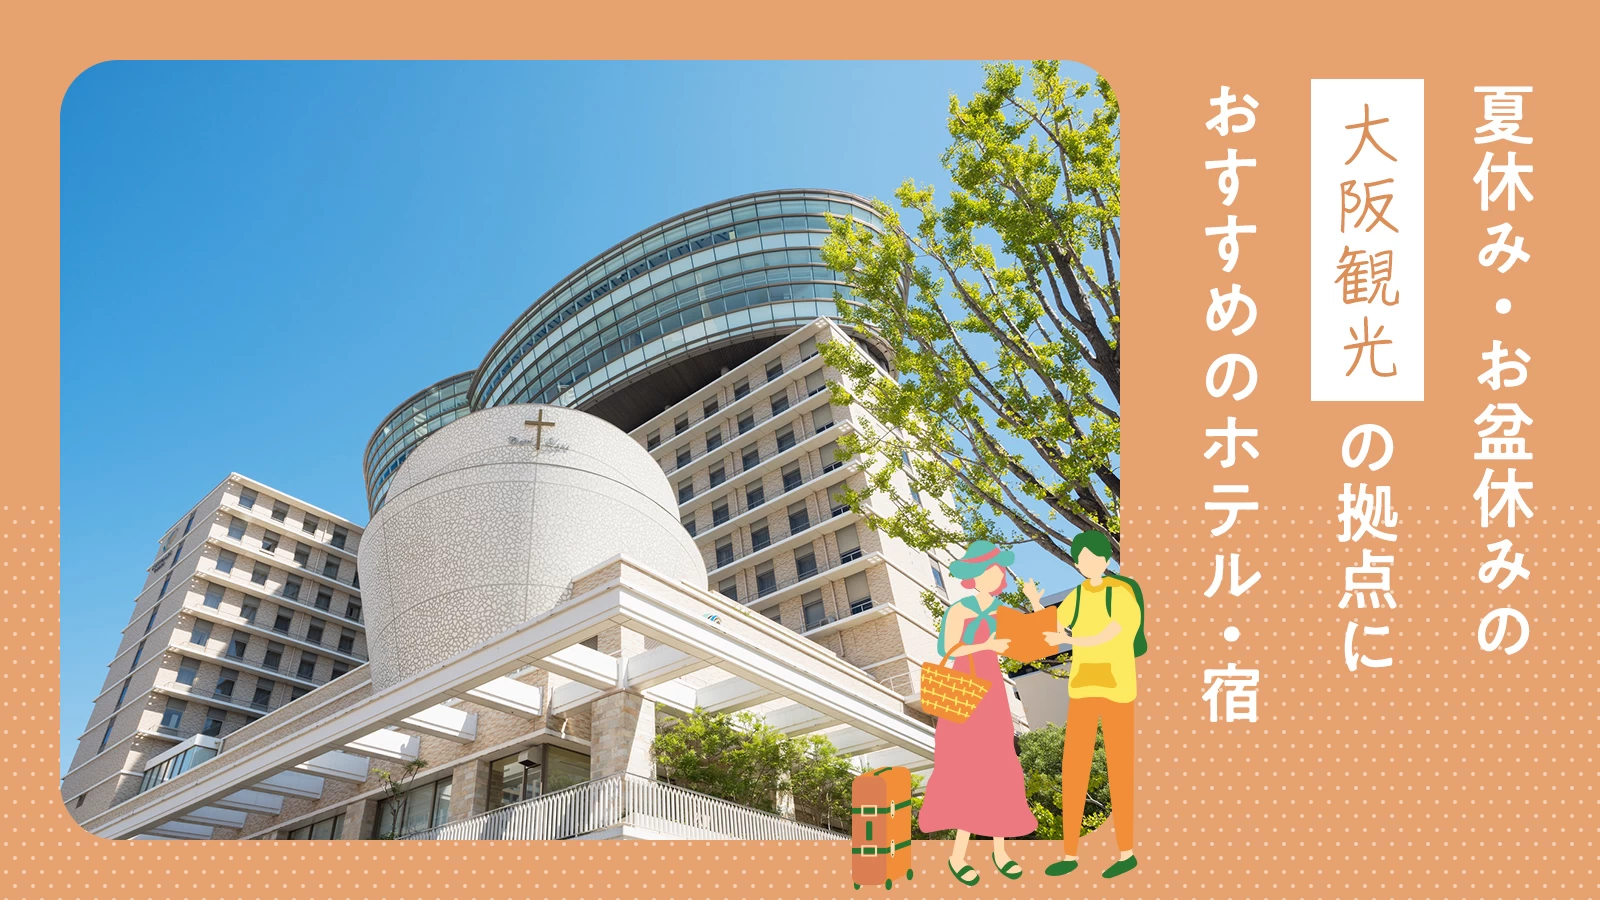 【関西】夏休み・お盆休みの大阪観光の拠点にしたいホテル11選 大阪市内で厳選